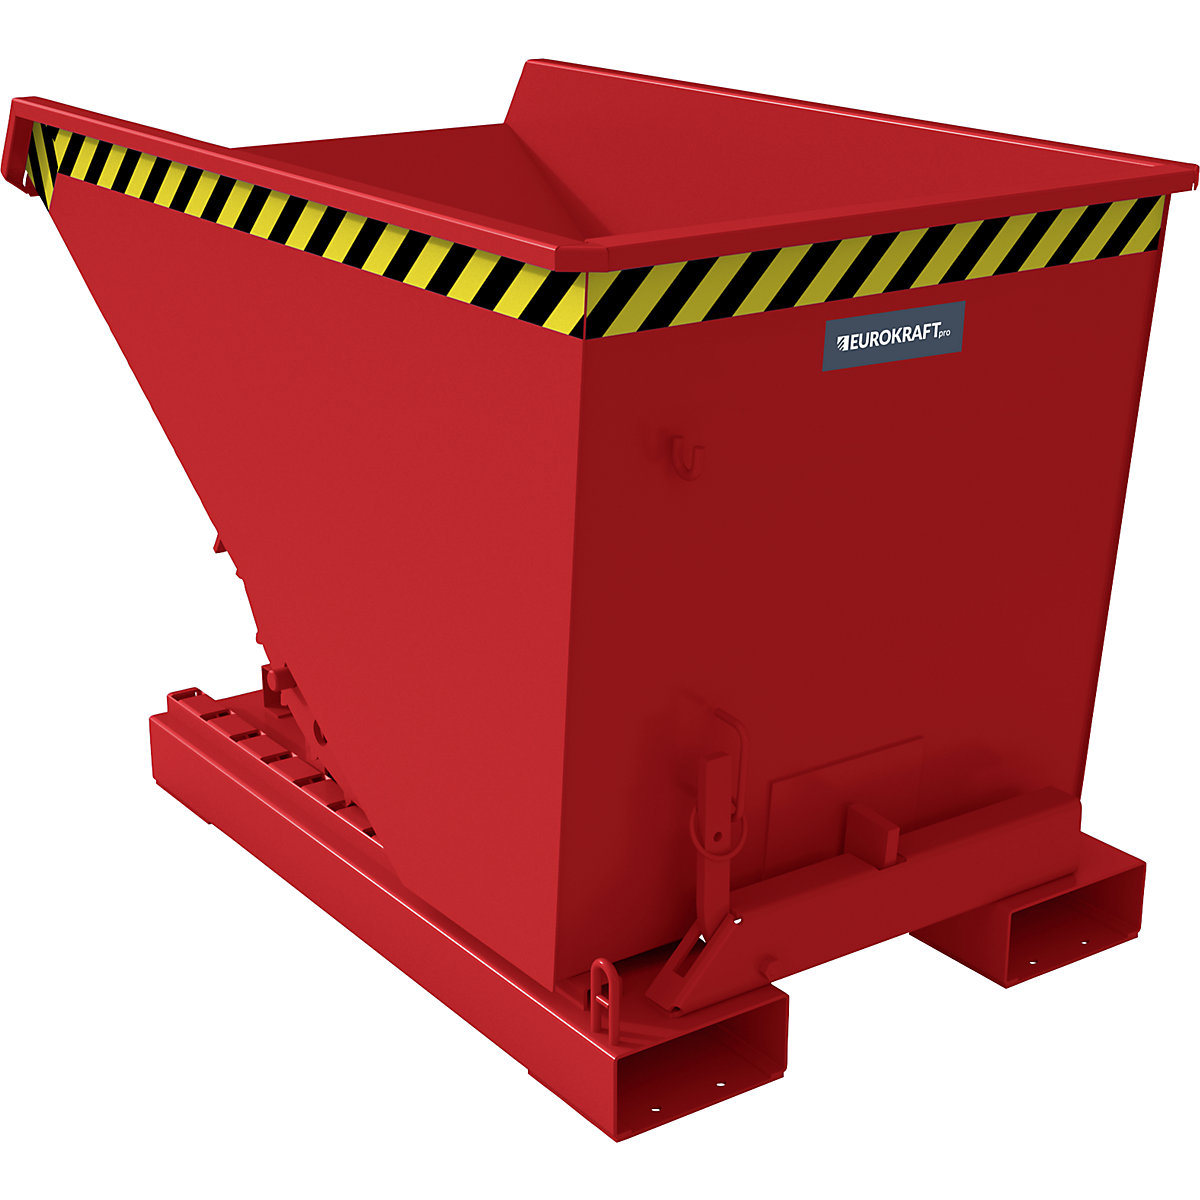 EUROKRAFTpro – Pojemnik przechylany z mechanizmem tocznym, poj. 0,3 m³, dł. x szer. x wys. 1260 x 770 x 835 mm, czerwony